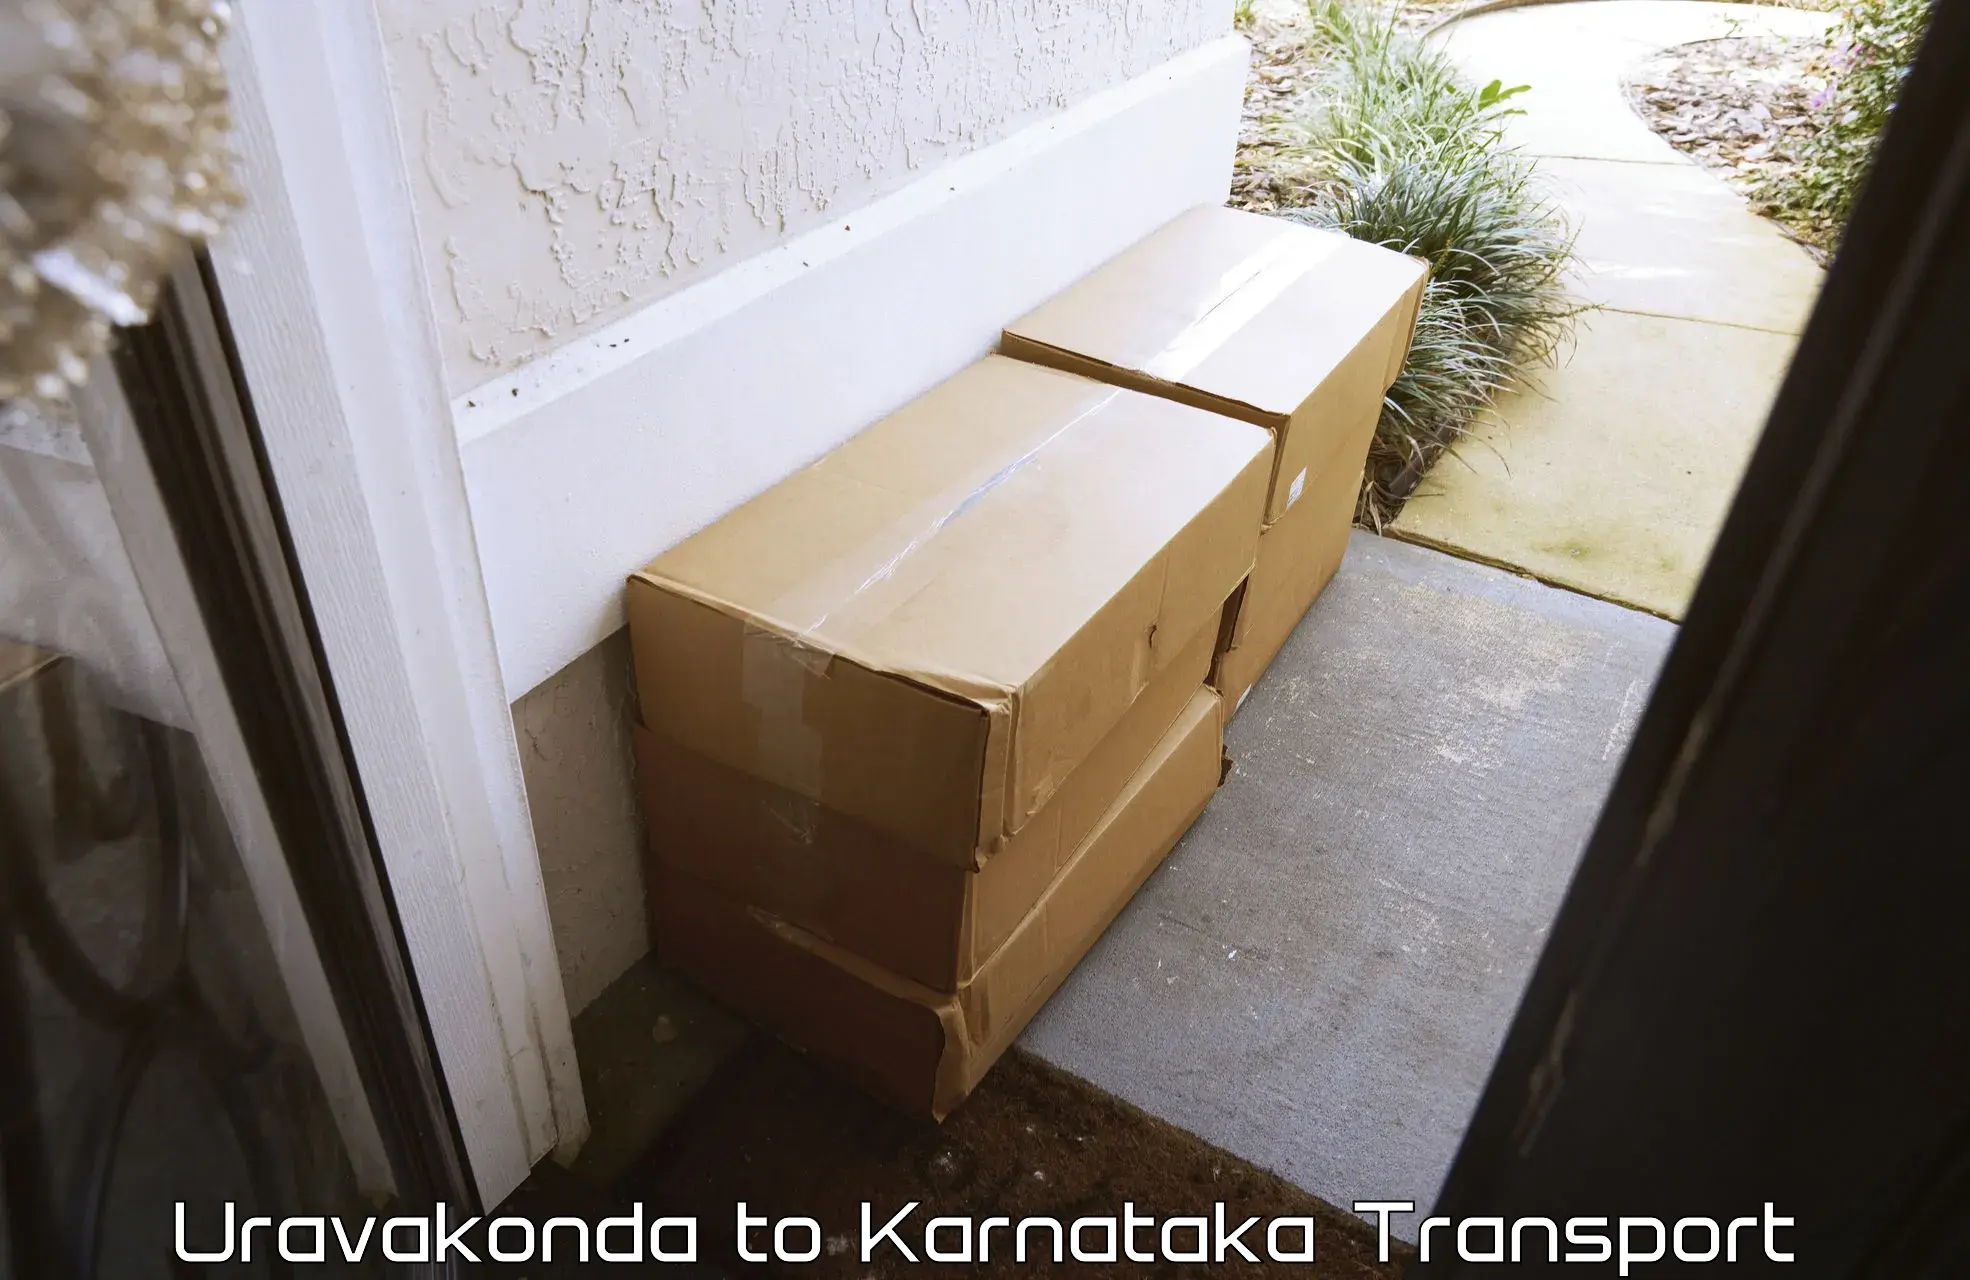 Container transport service Uravakonda to Anavatti